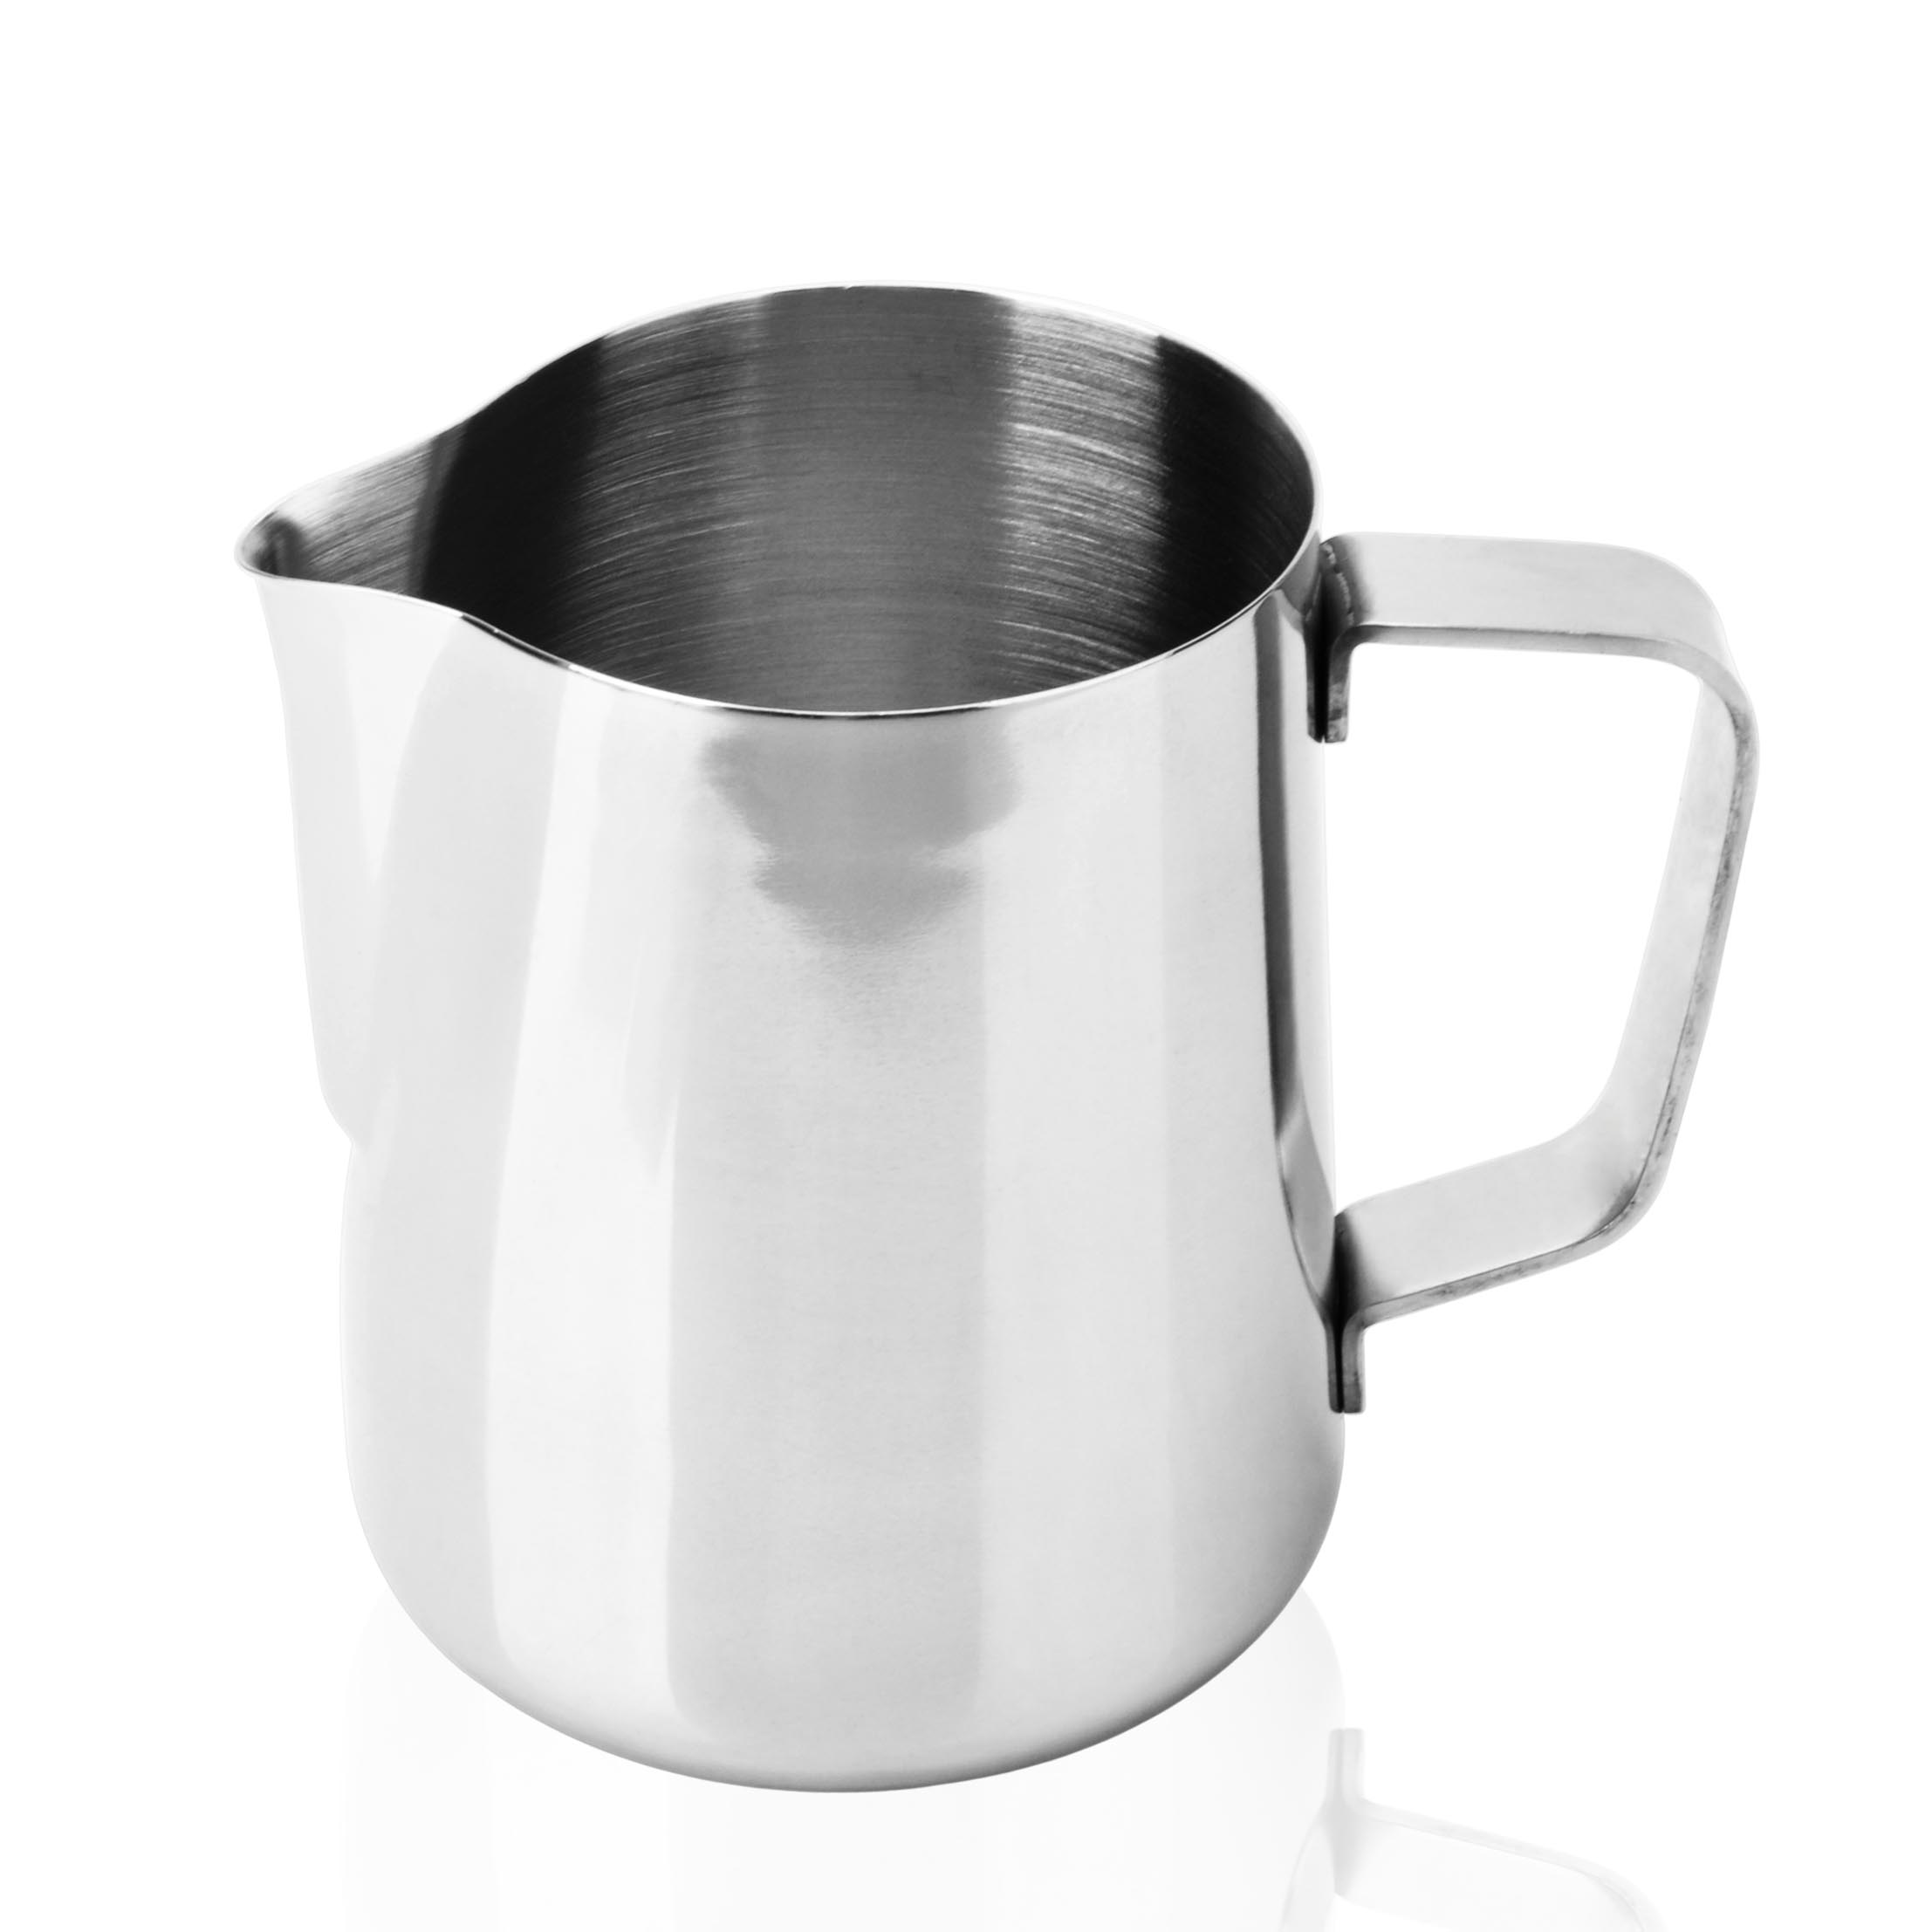 不銹鋼咖啡配套器具尖嘴拉花杯奶盅家居實用創意拉花缸拉花壺器具